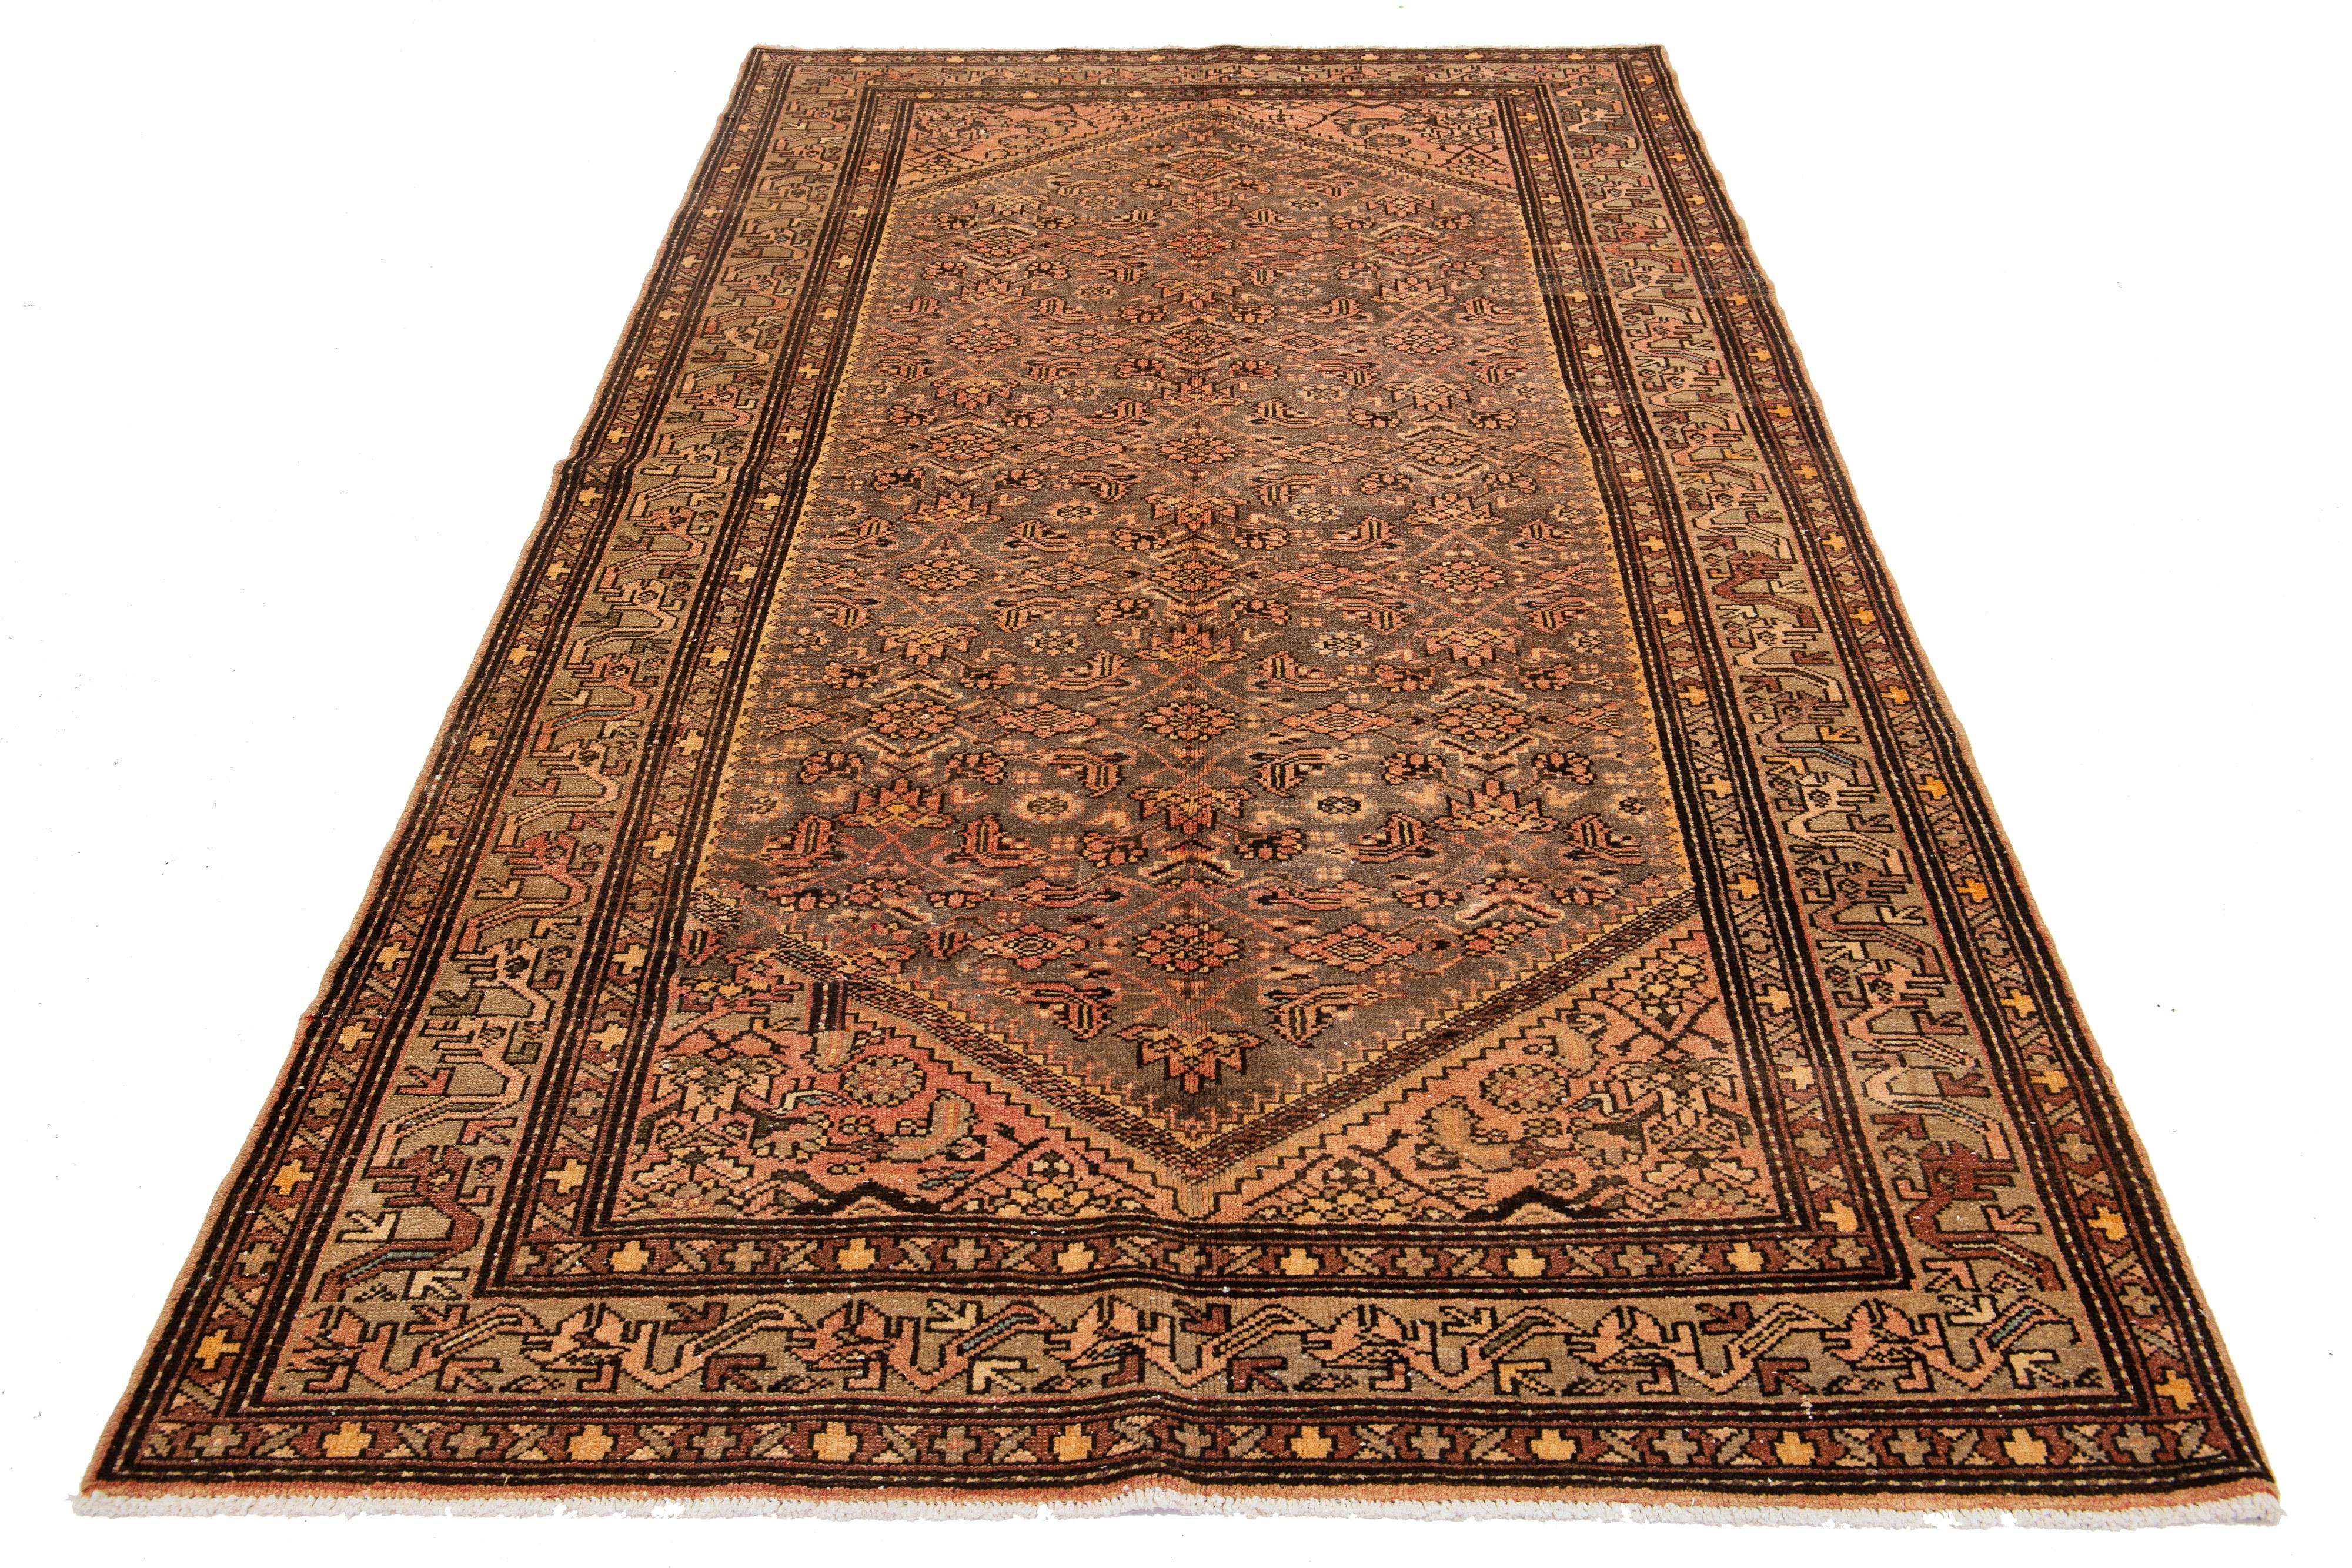 Dieser außergewöhnliche antike persische Malayer-Teppich ist aus handgeknüpfter Wolle gefertigt. Das Design zeichnet sich durch eine schöne Kombination aus Grau und Rost als Basis aus, die durch blaue, orangefarbene und braune Akzente in einem